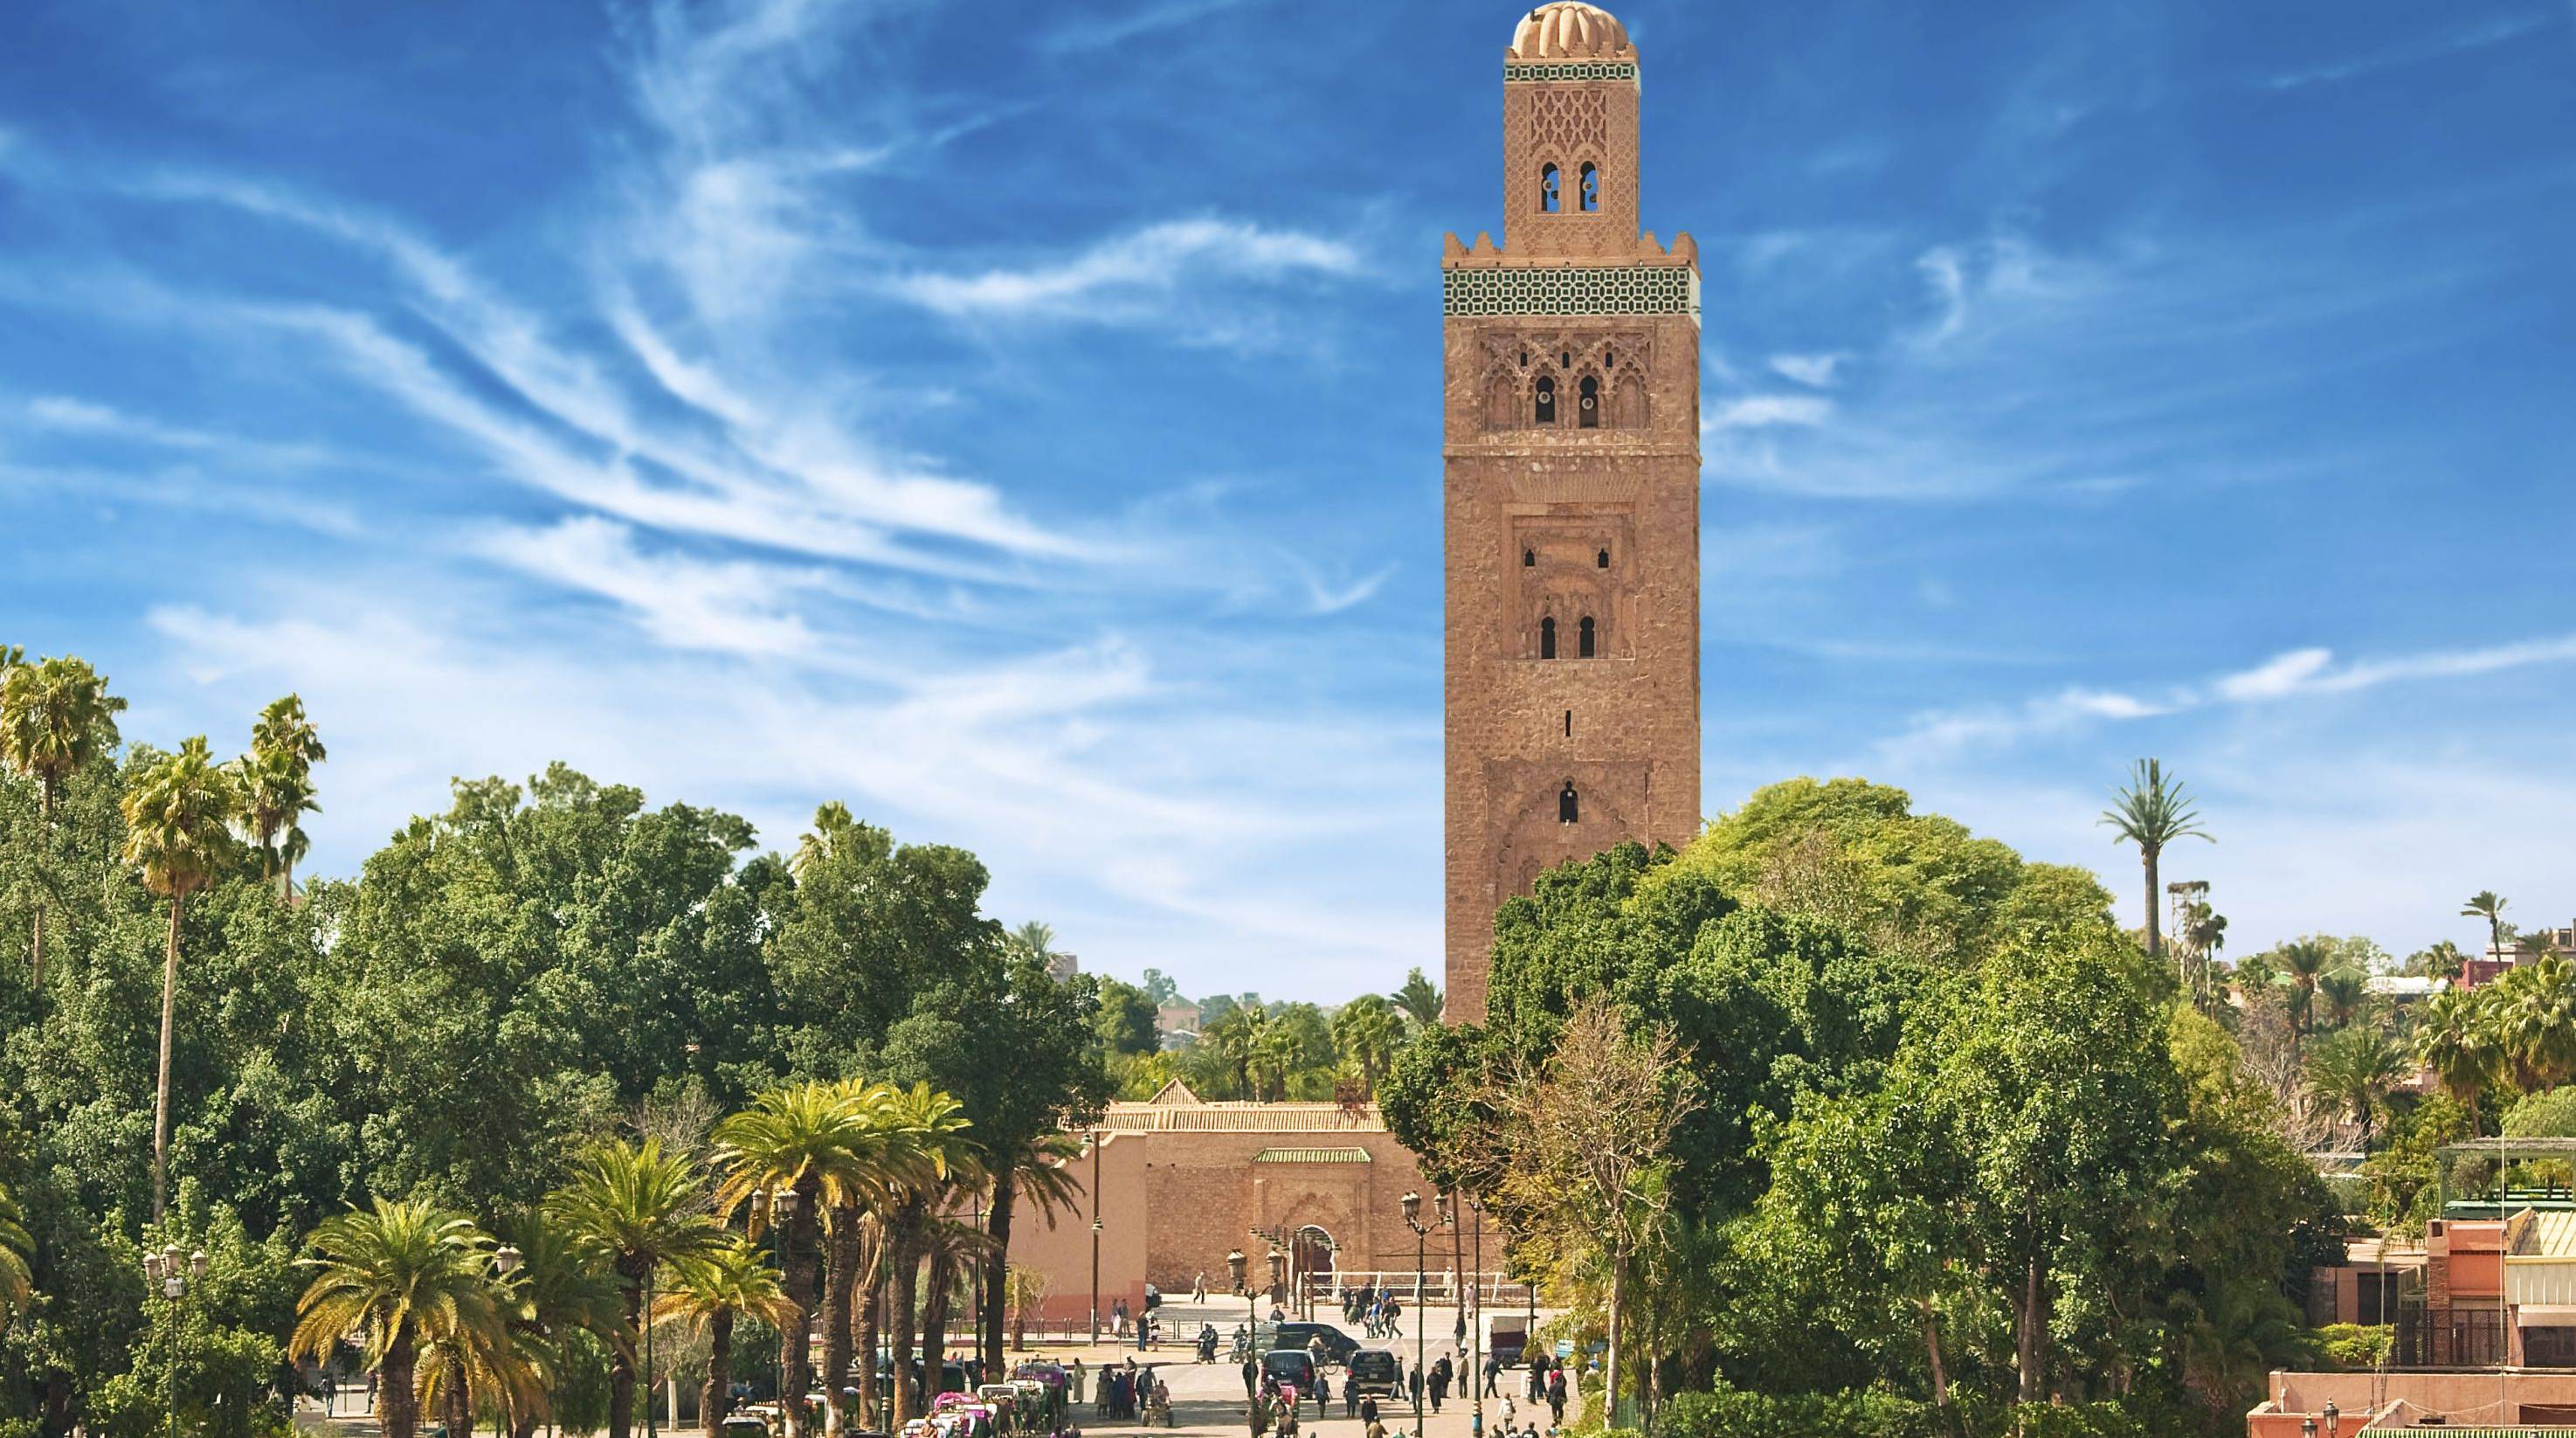 Bienvenidos a Marrakech